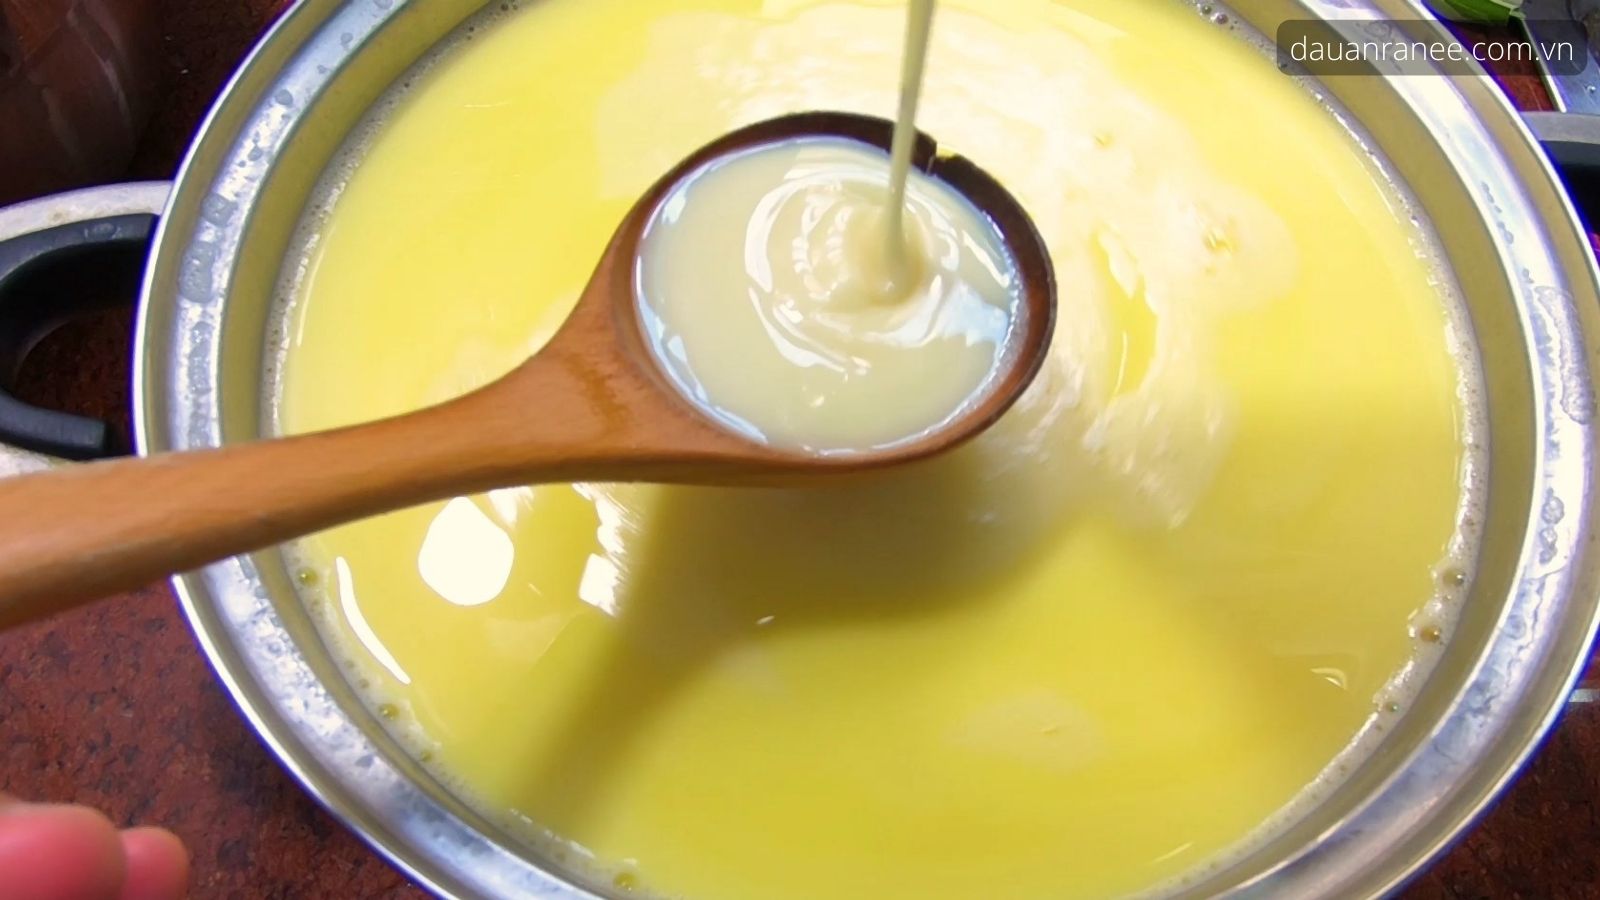 Cách làm sữa bắp bí đỏ - Nấu sữa bắp